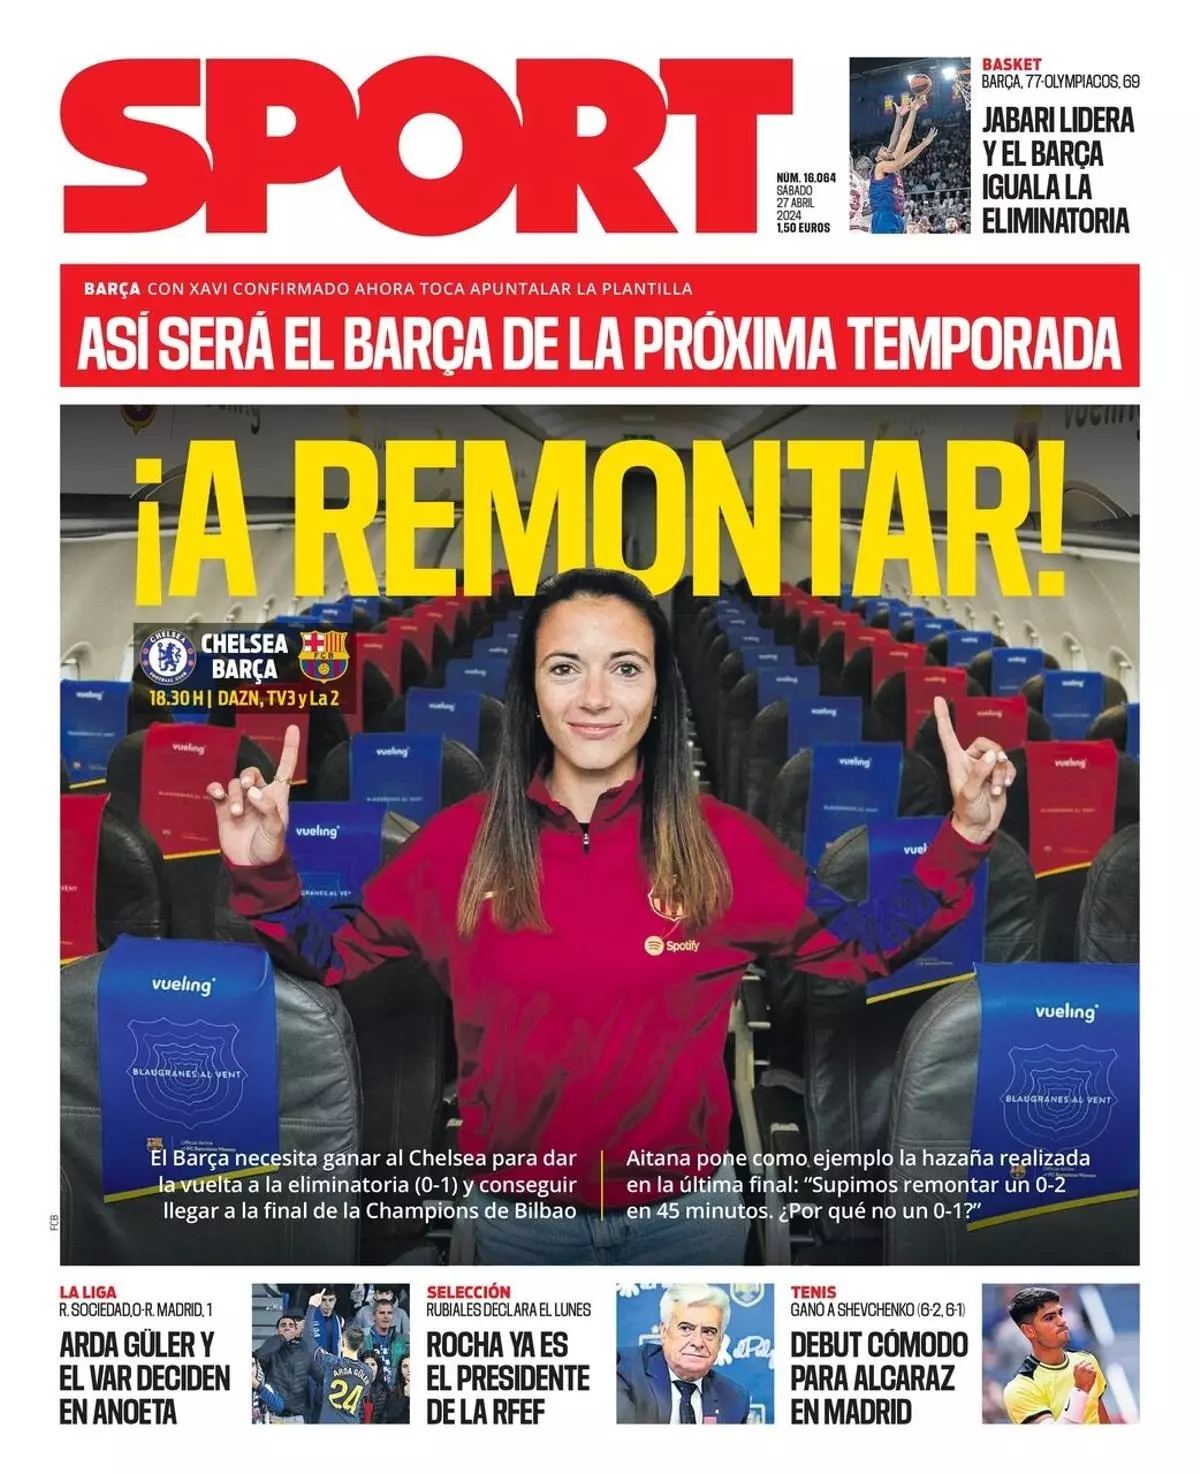 El Chelsea - Barça, Arda Güler o el futuro pivote, en las portadas del día